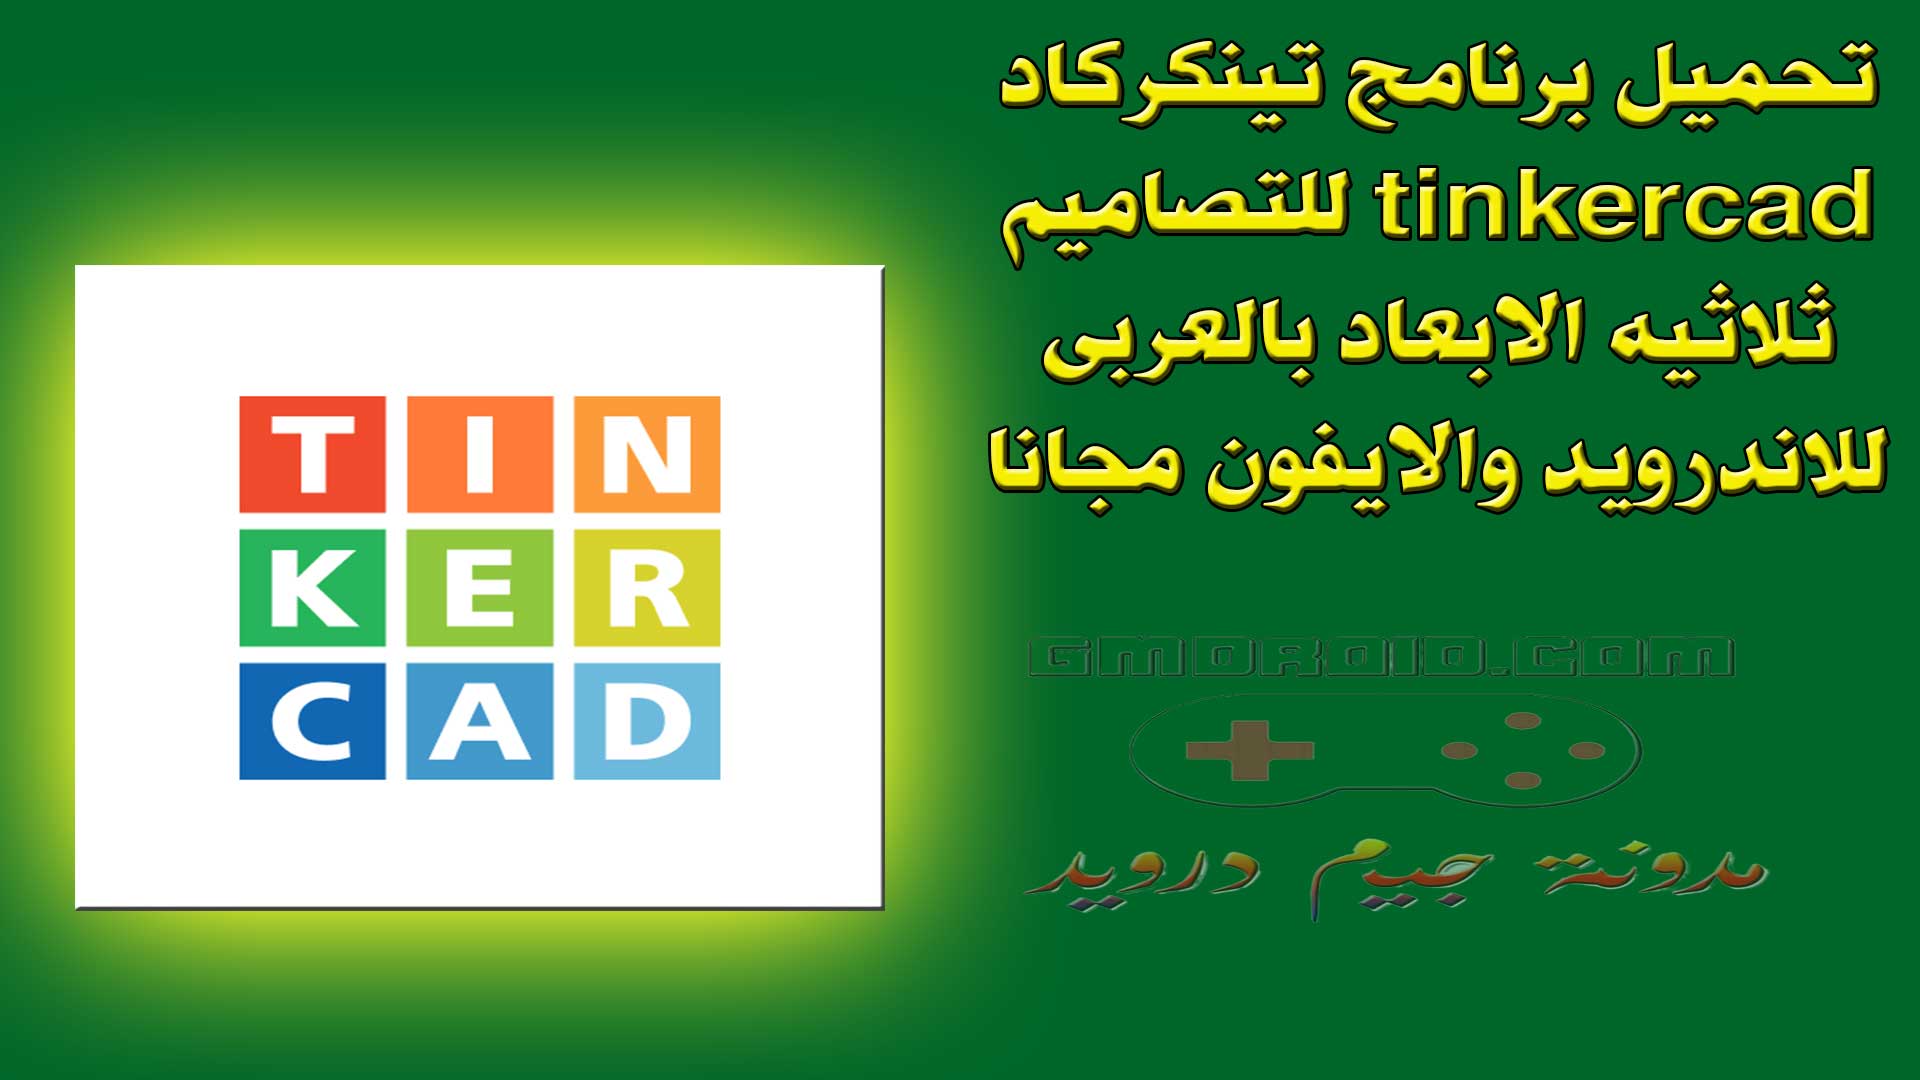 تحميل برنامج تينكركاد tinkercad للتصاميم ثلاثيه الابعاد بالعربى للاندرويد والايفون مجانا